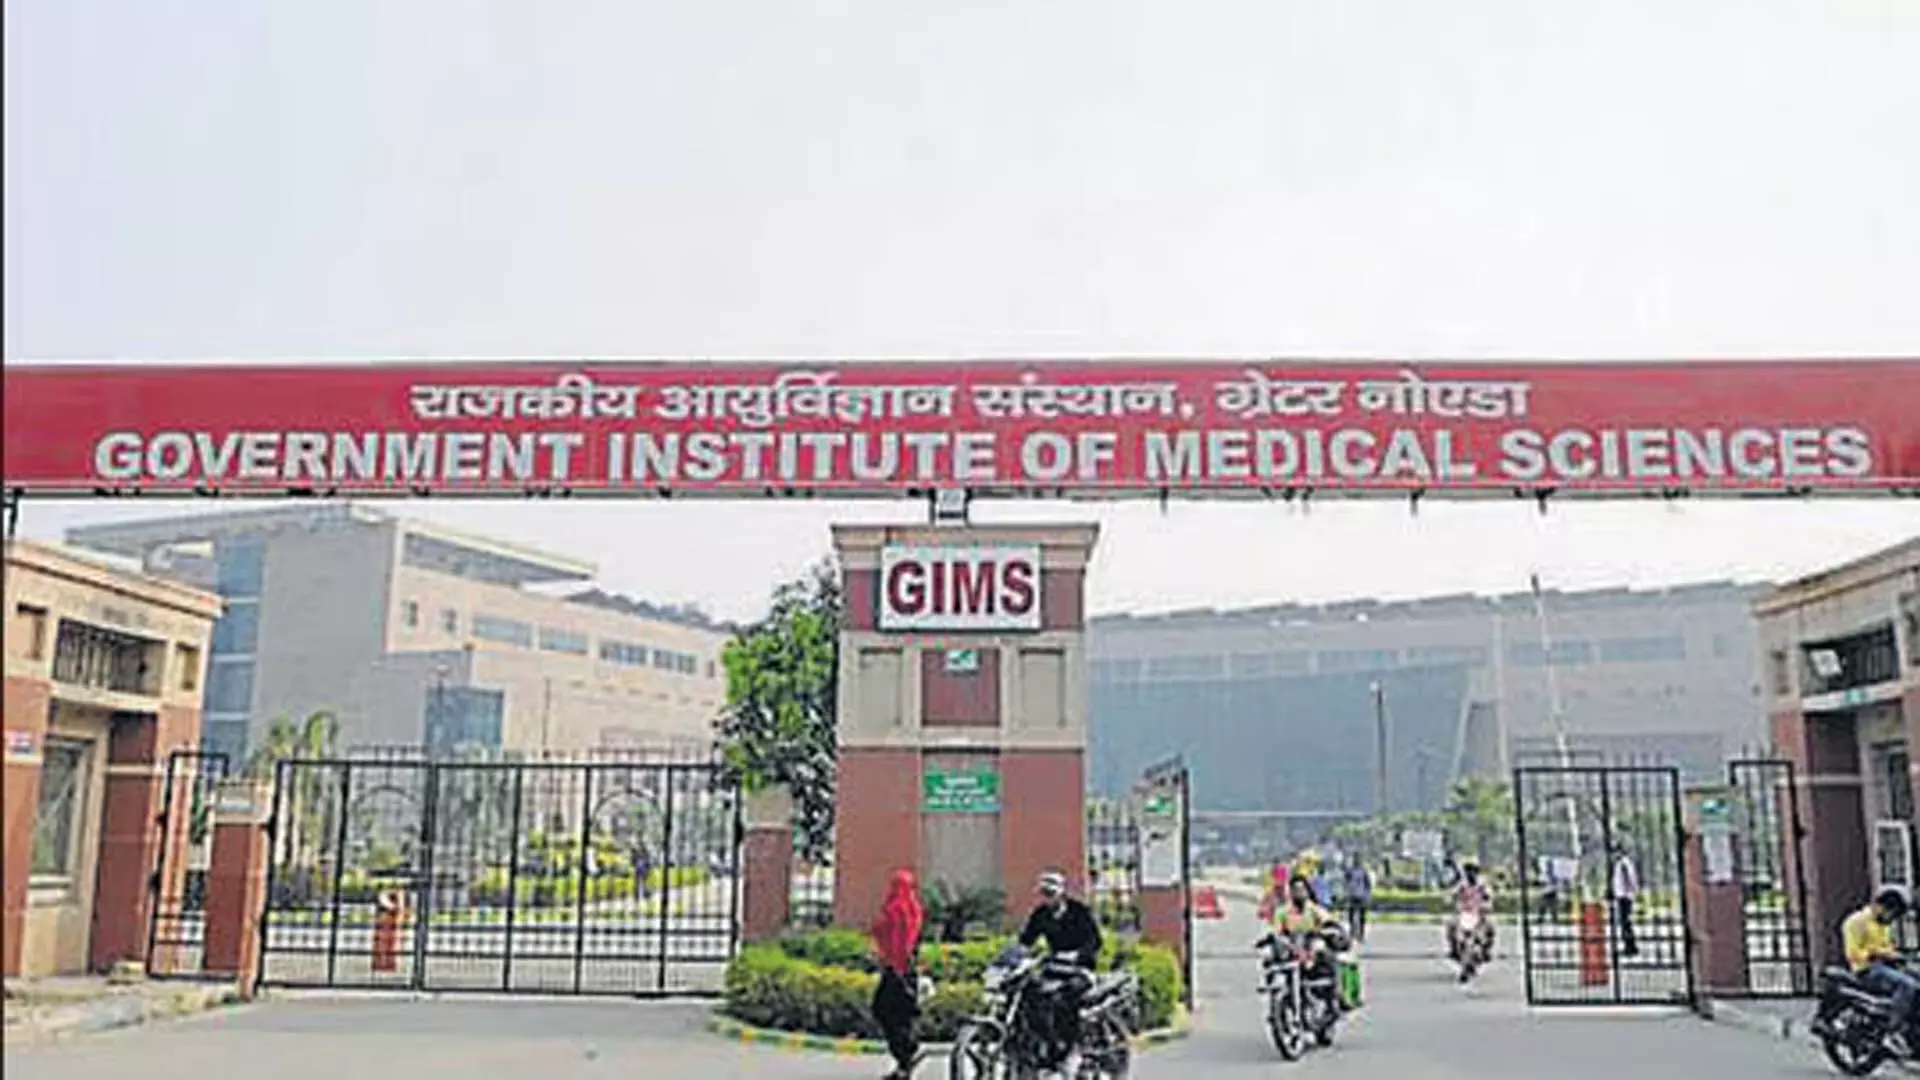 NOIDA: यूपी सरकार ने जीआईएमएस अस्पताल की मरम्मत के लिए 25 करोड़ रुपये आवंटित किए